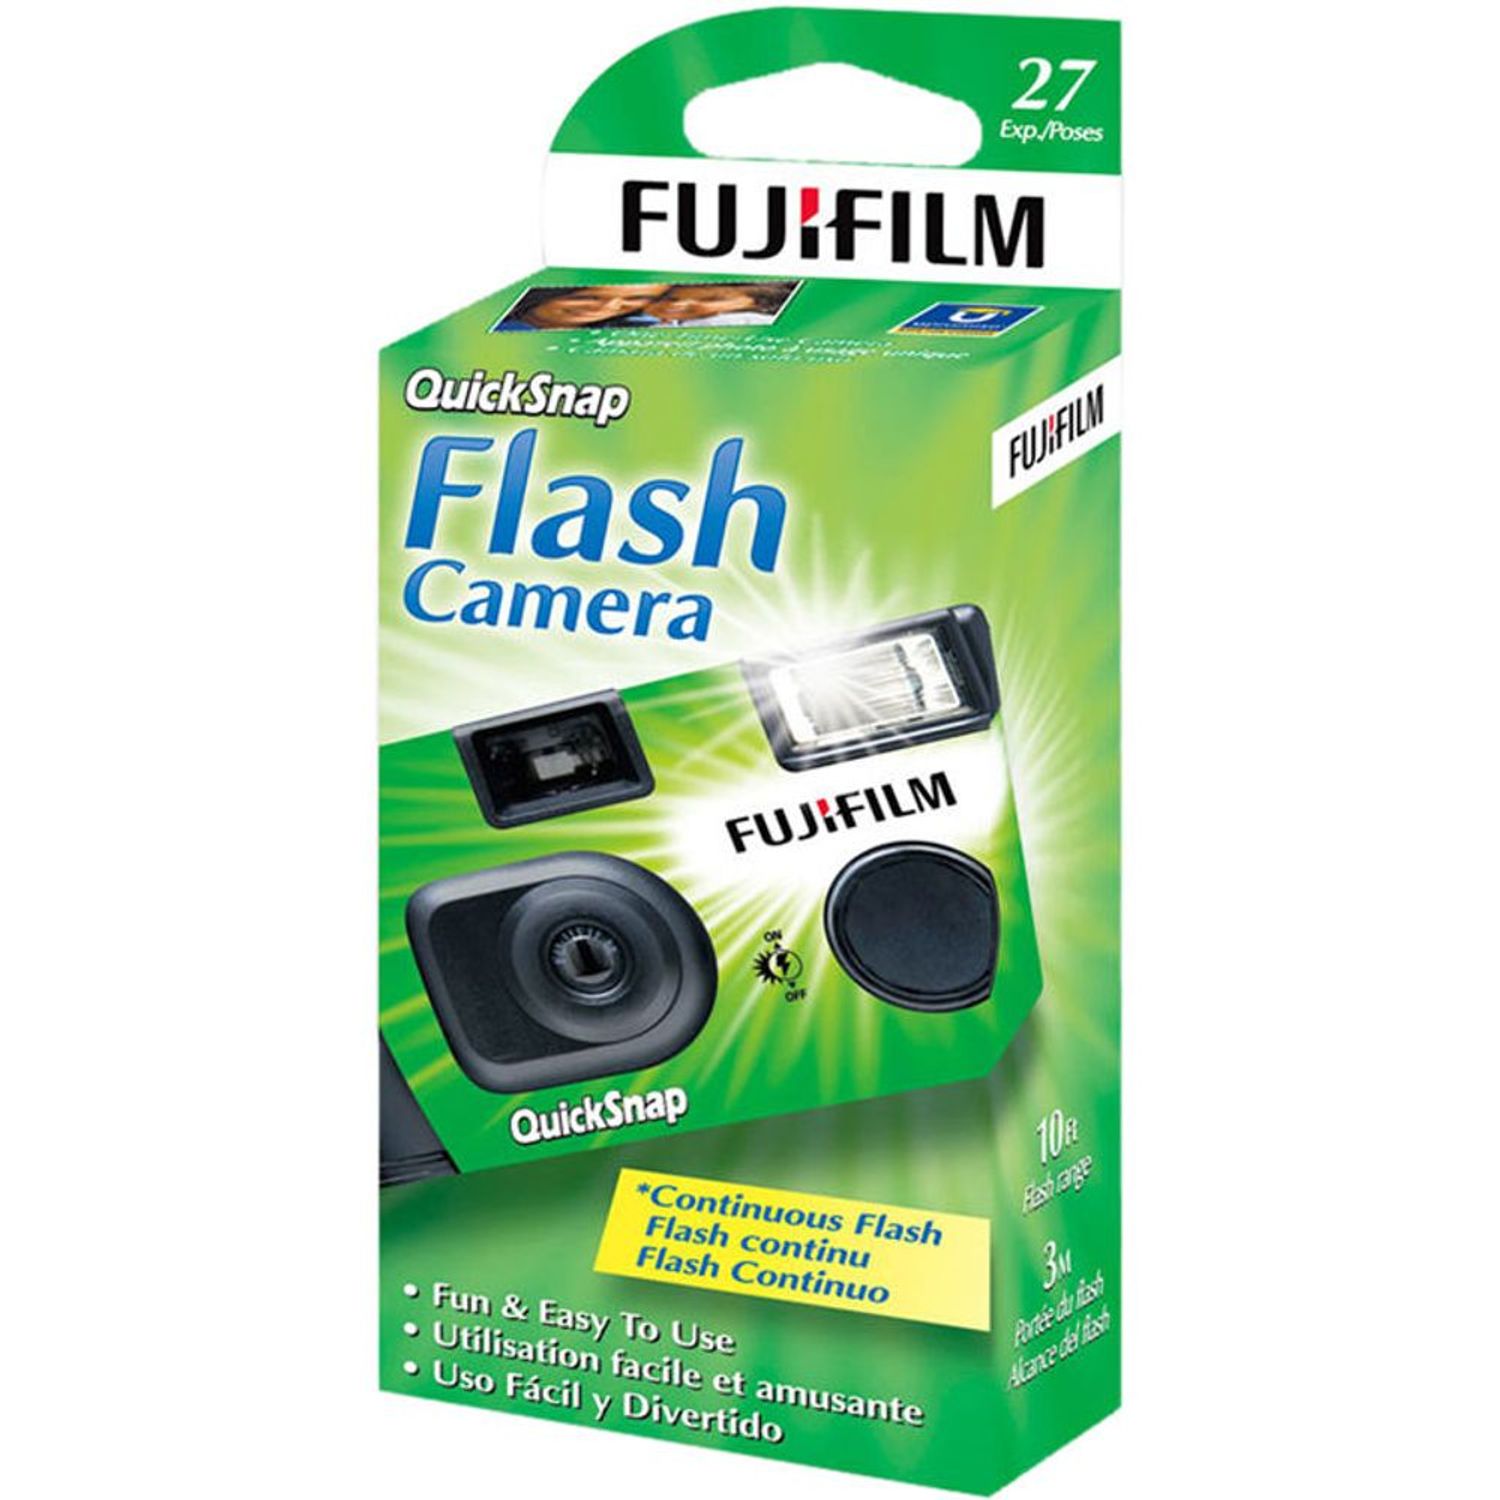 Fujifilm Quicksnap Flash 400 Cámara desechable de único (27 exposiciones) | Oechsle - Oechsle